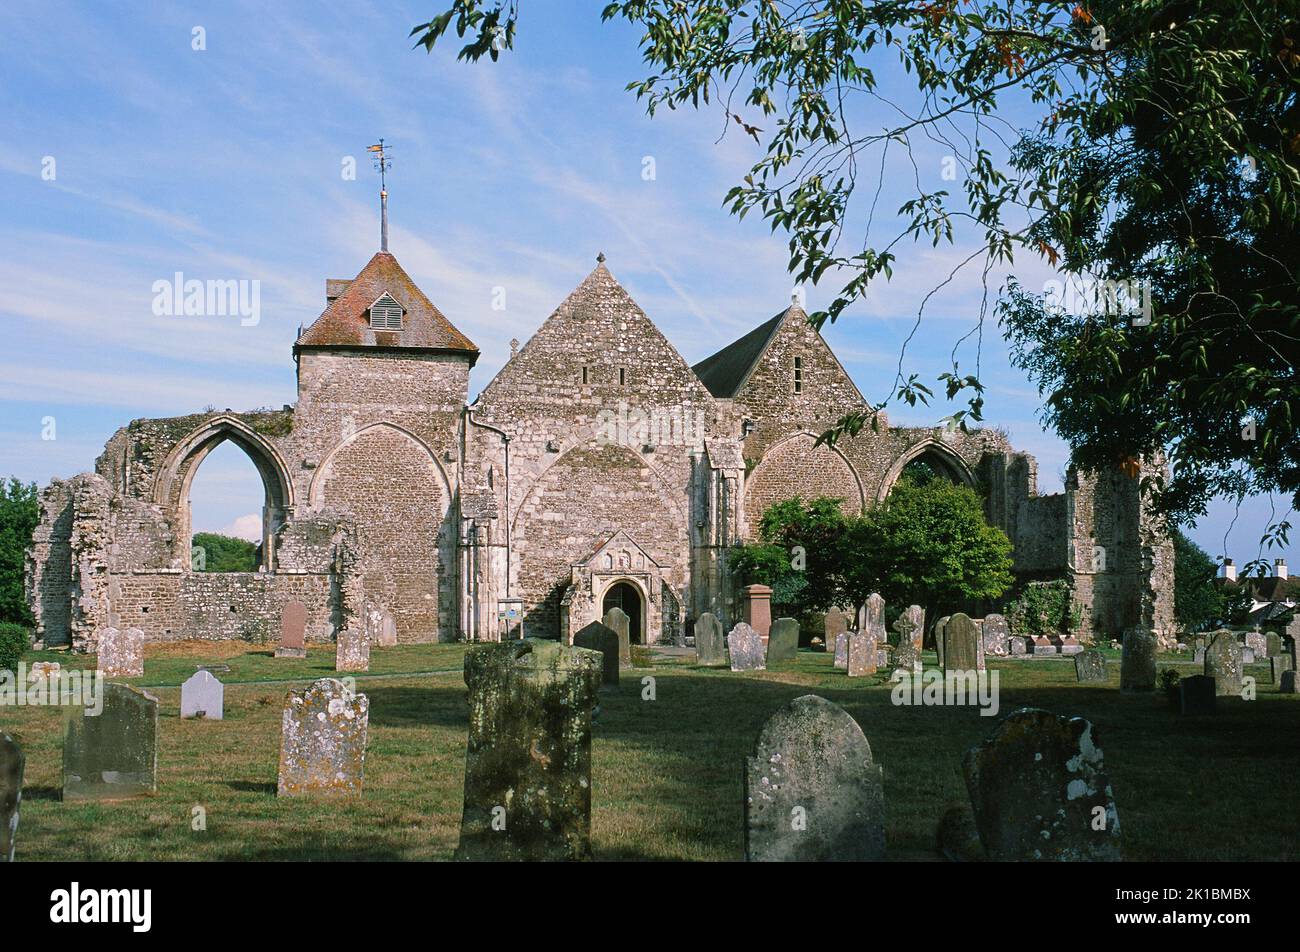 L'église historique de St Thomas le Martyr dans la ville de Winchelsea, East Sussex, South East England Banque D'Images